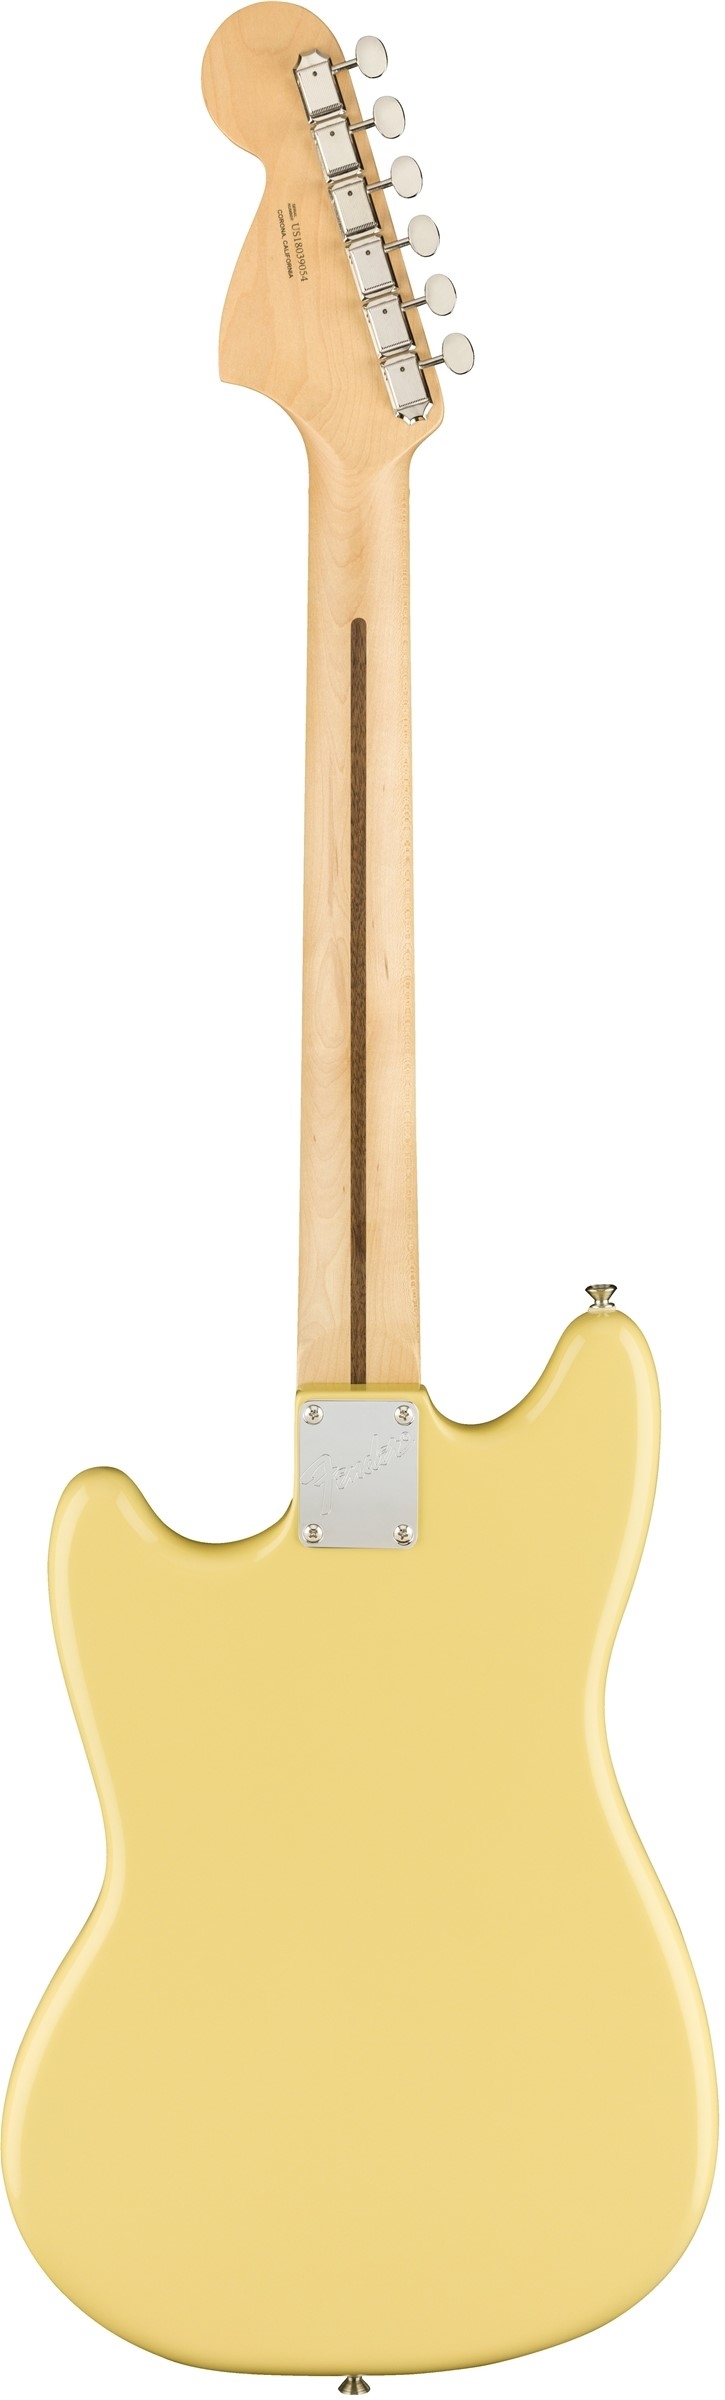 Fender American Performer Mustang Vintage white